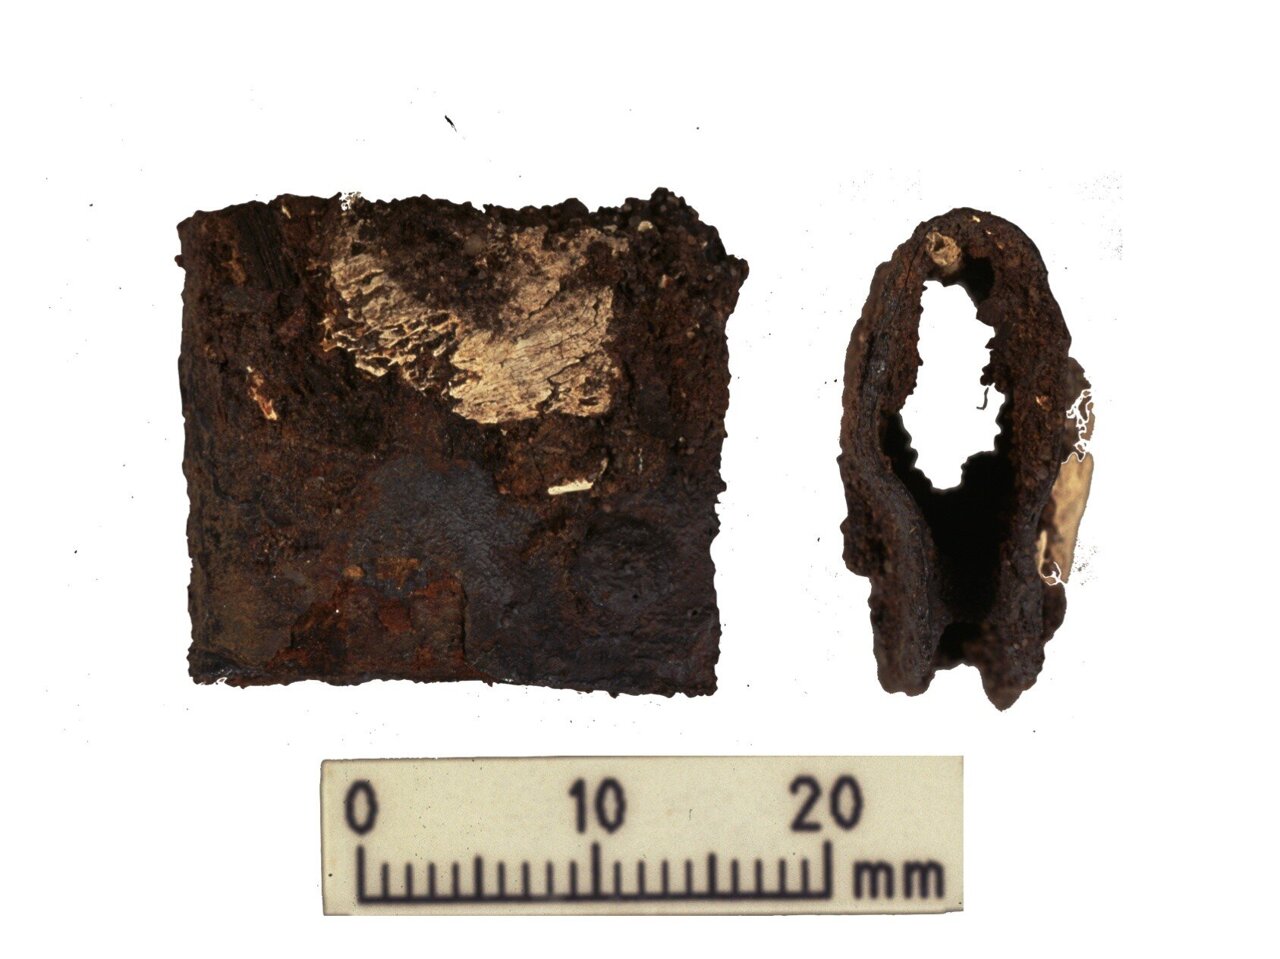 Zaponka iz ščita vikinškega bojevnika, najdenega med prvotnimi izkopavanji v letih 1998–2000. Sponka je bila najdena v istem grobu kot človeški in živalski ostanki, analizirani med najnovejšo raziskavo.